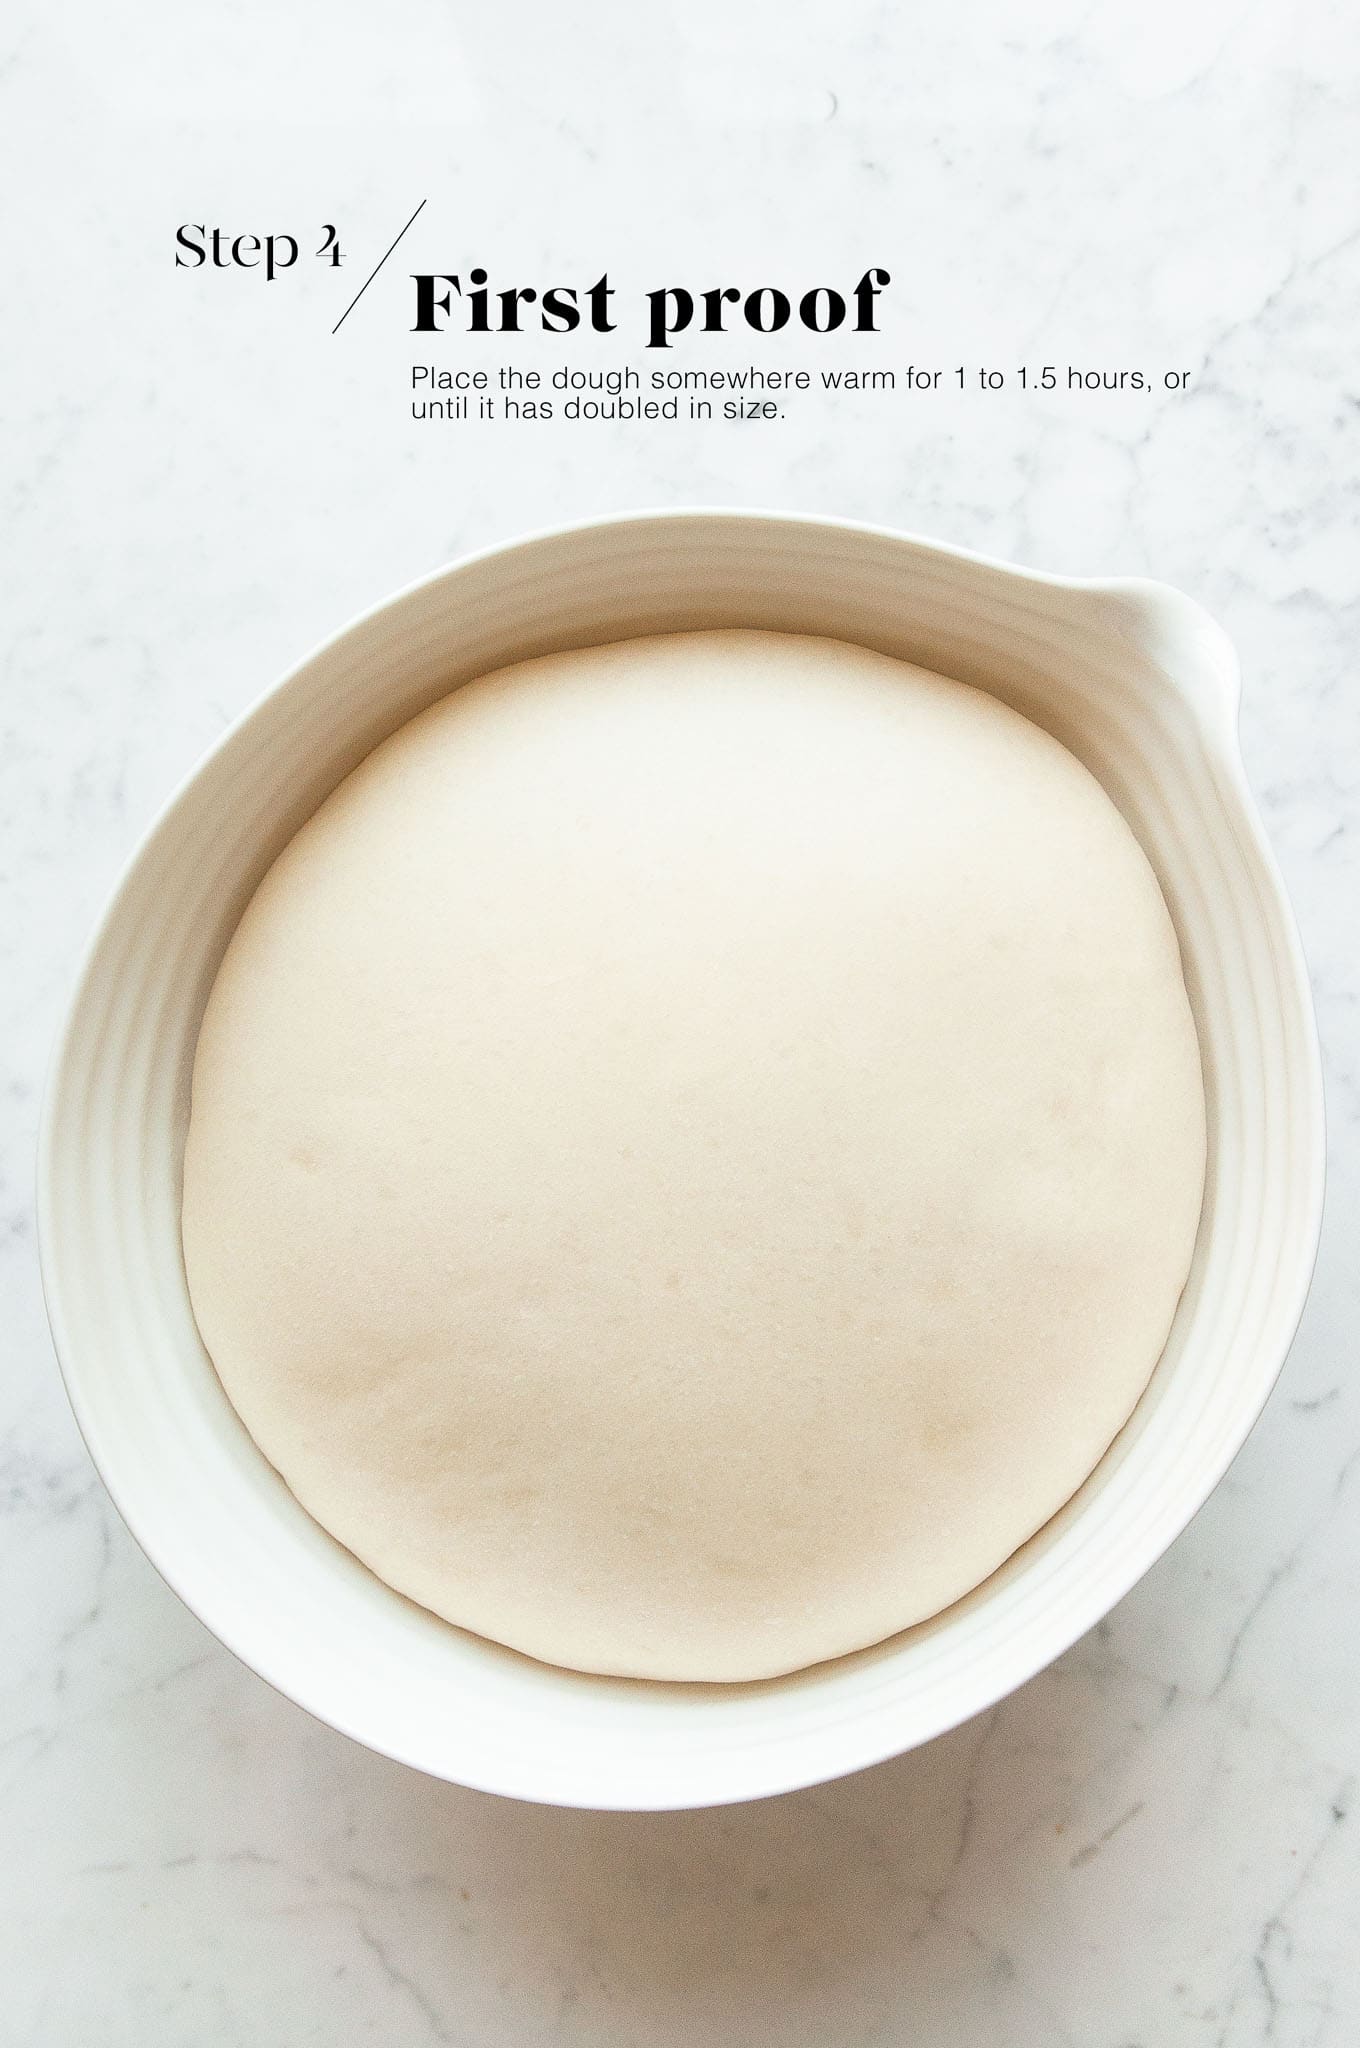 risen dough for cinnamon rolls in white bowl